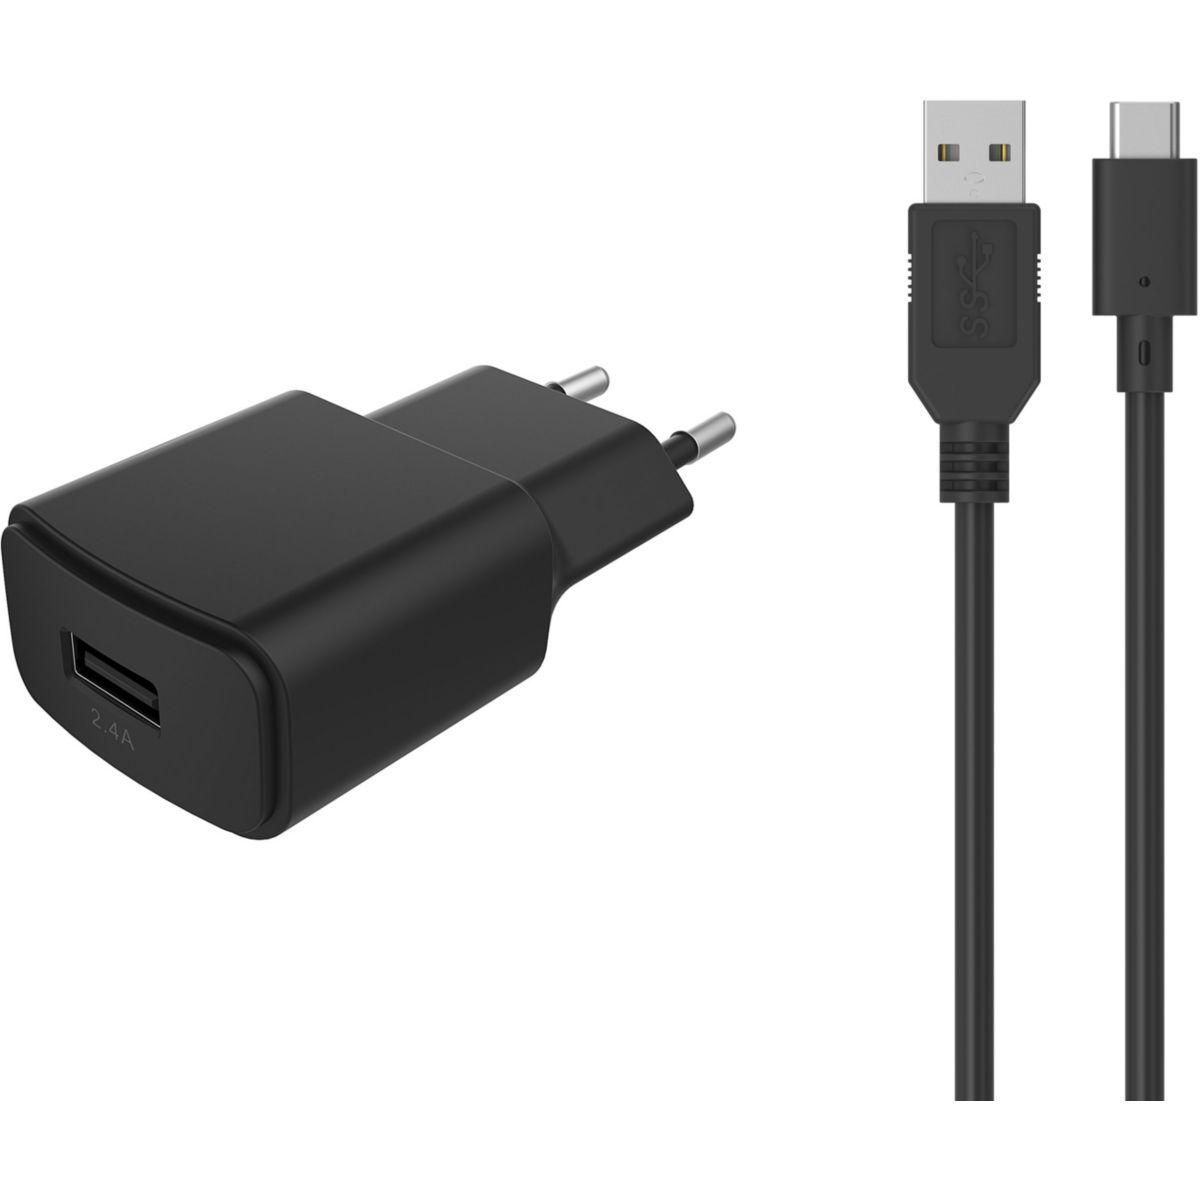 ESSENTIEL B Chargeur secteur USB 2,4A + Cable USB C noir